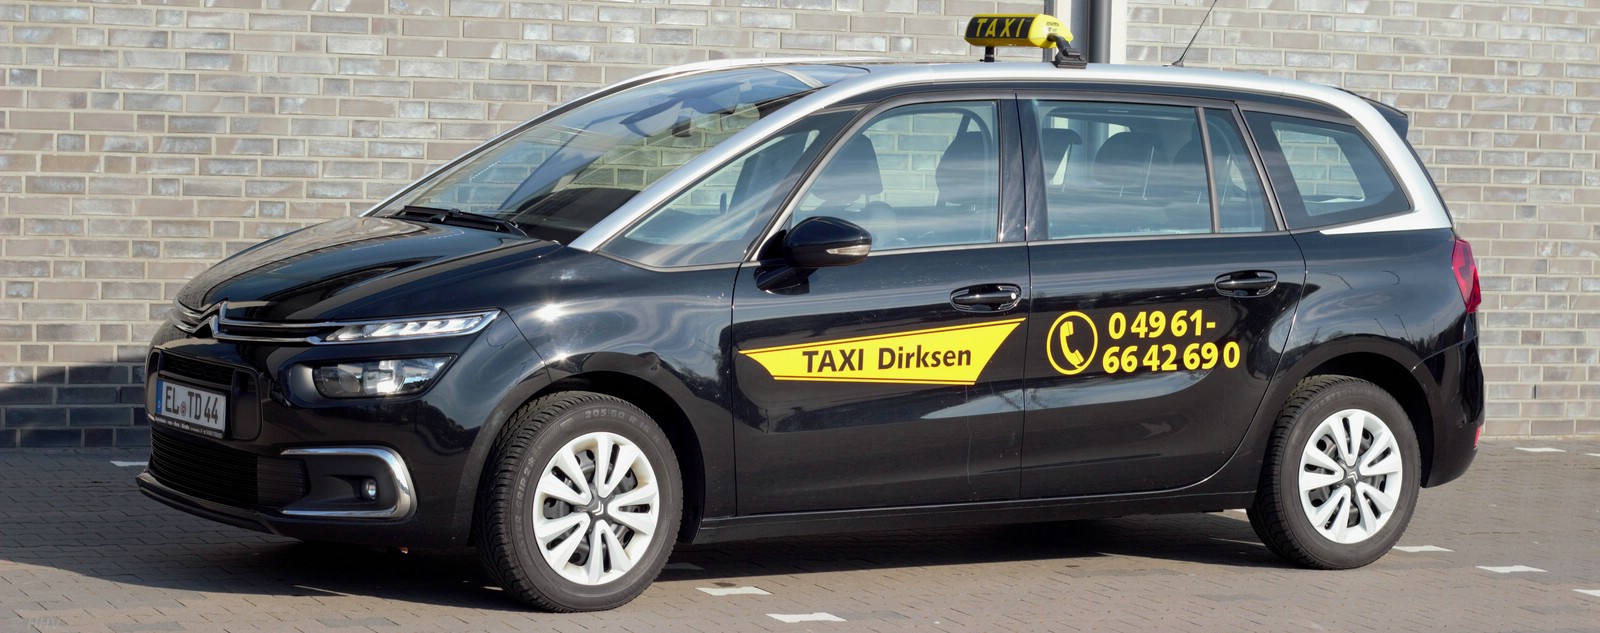 Ihr Taxi in Papenburg